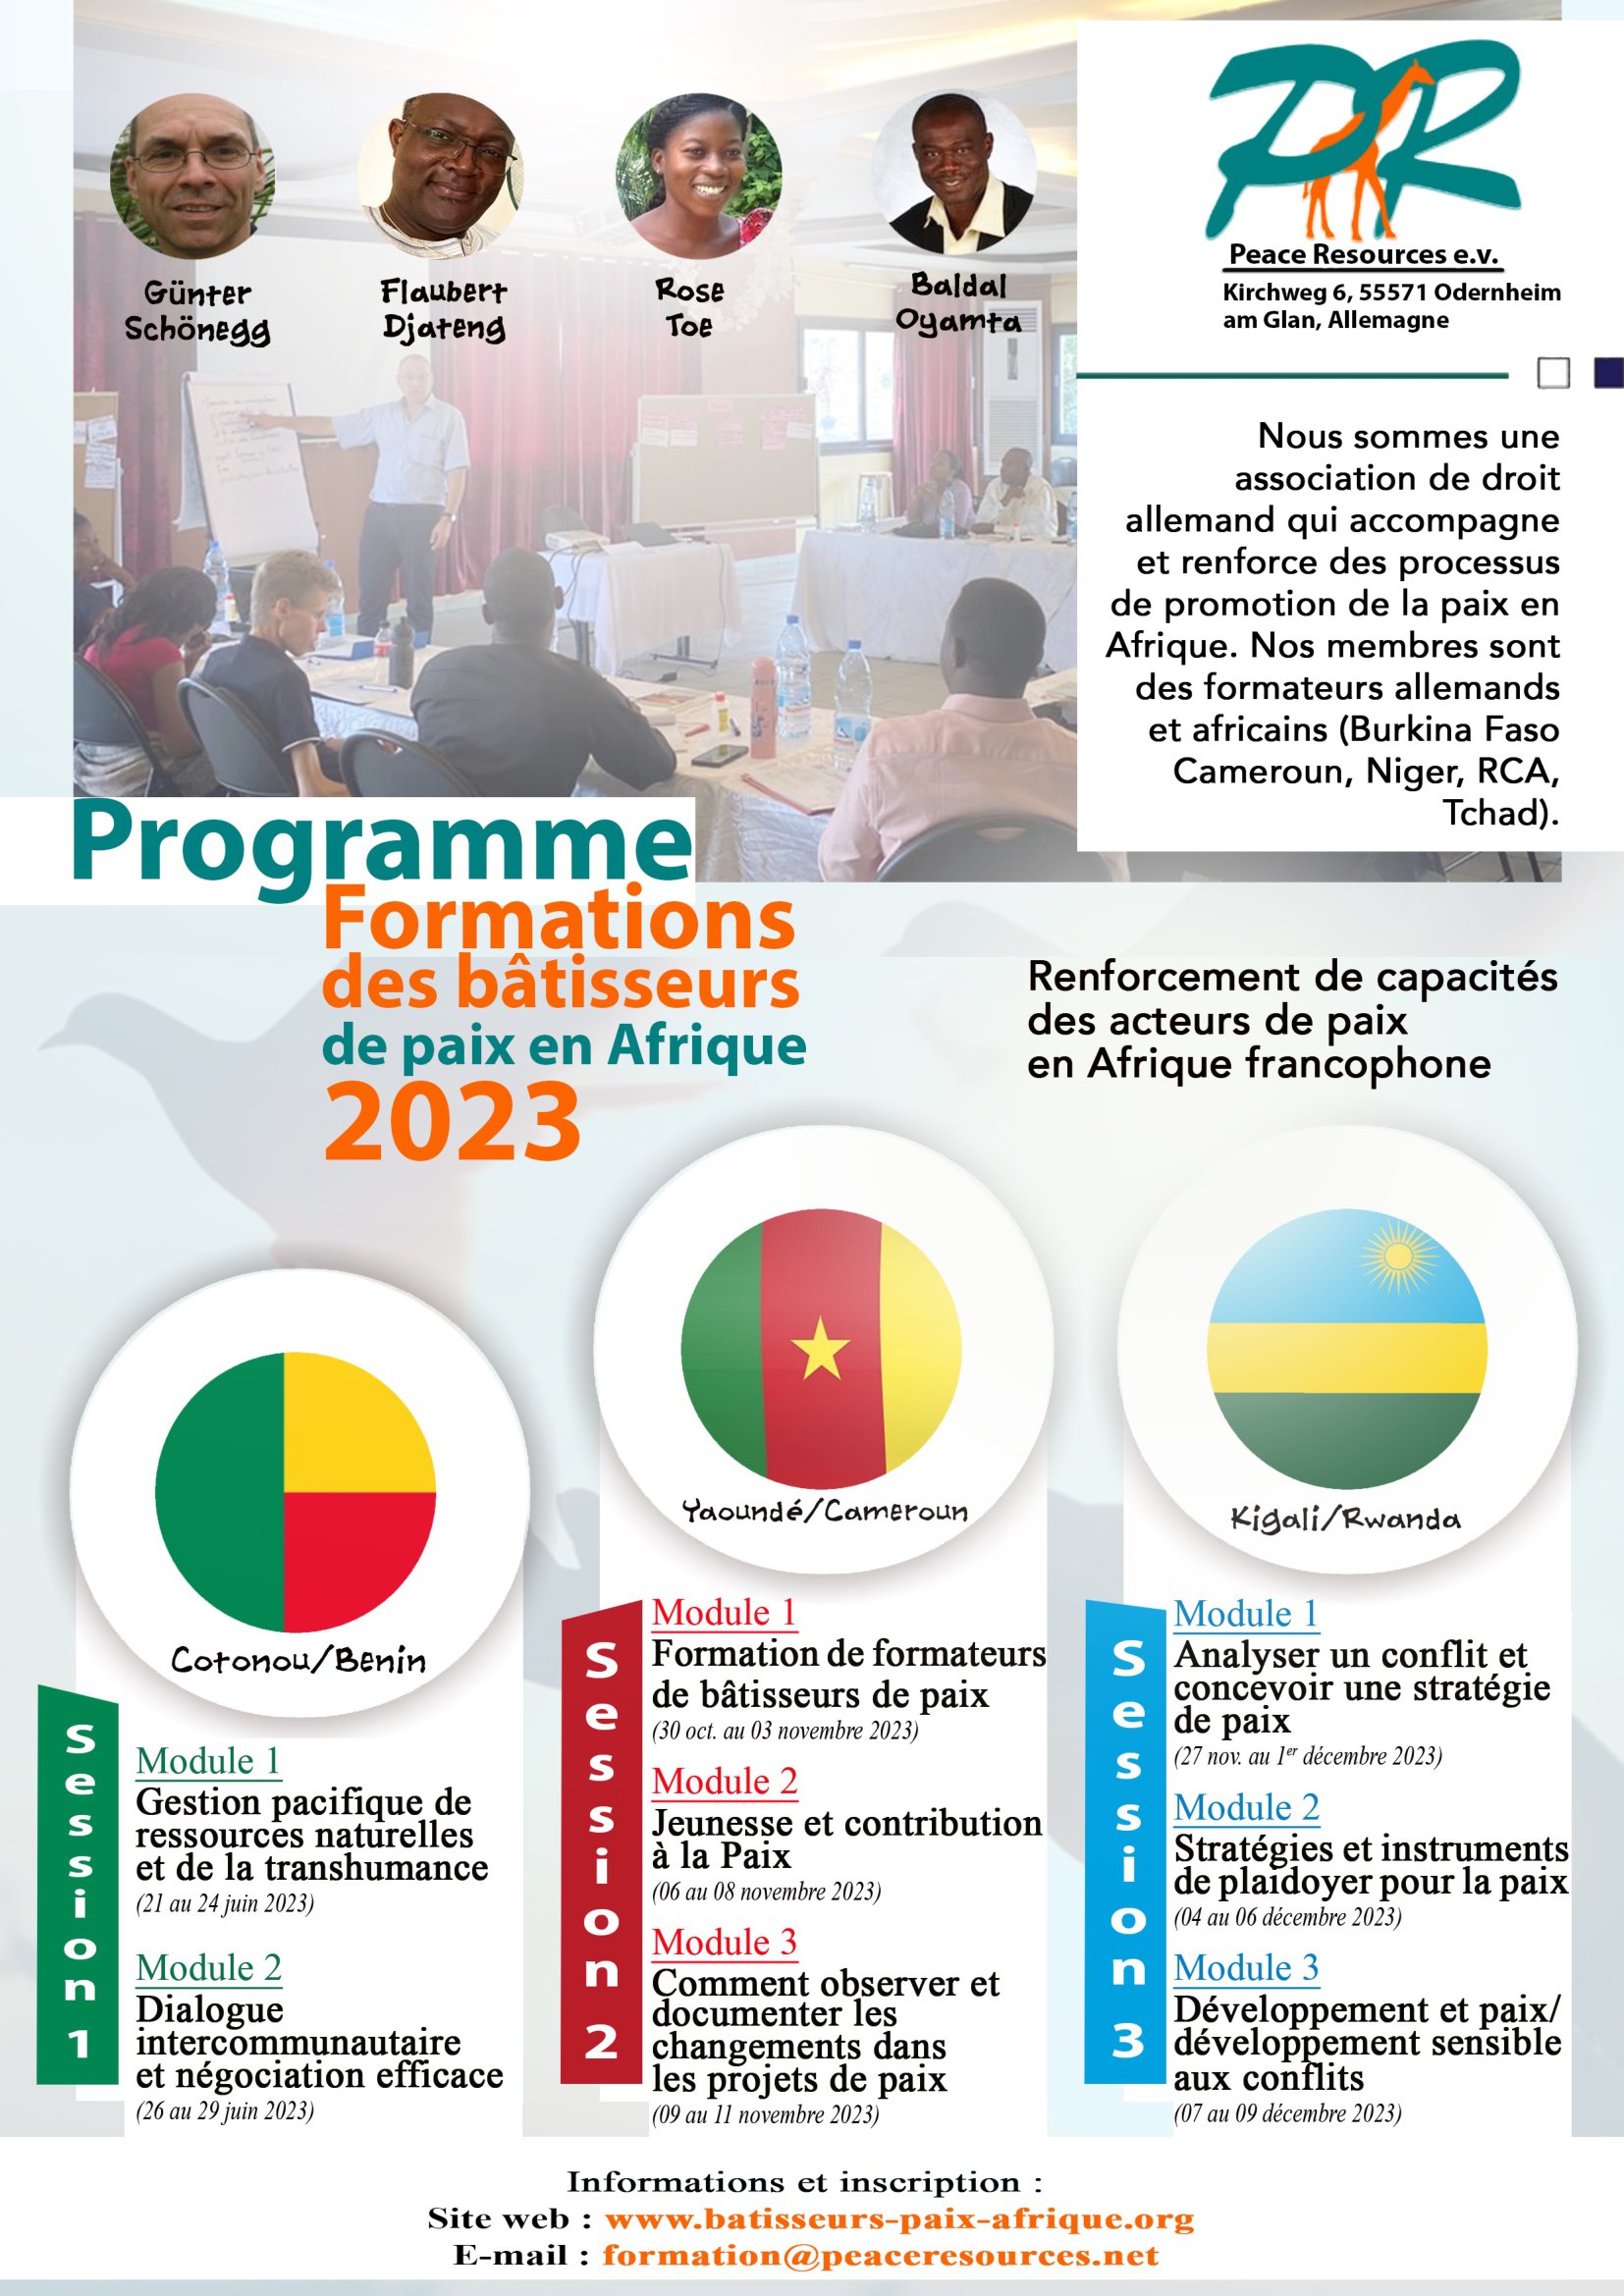 Programme formations des bâtisseurs de paix en Afrique 2023